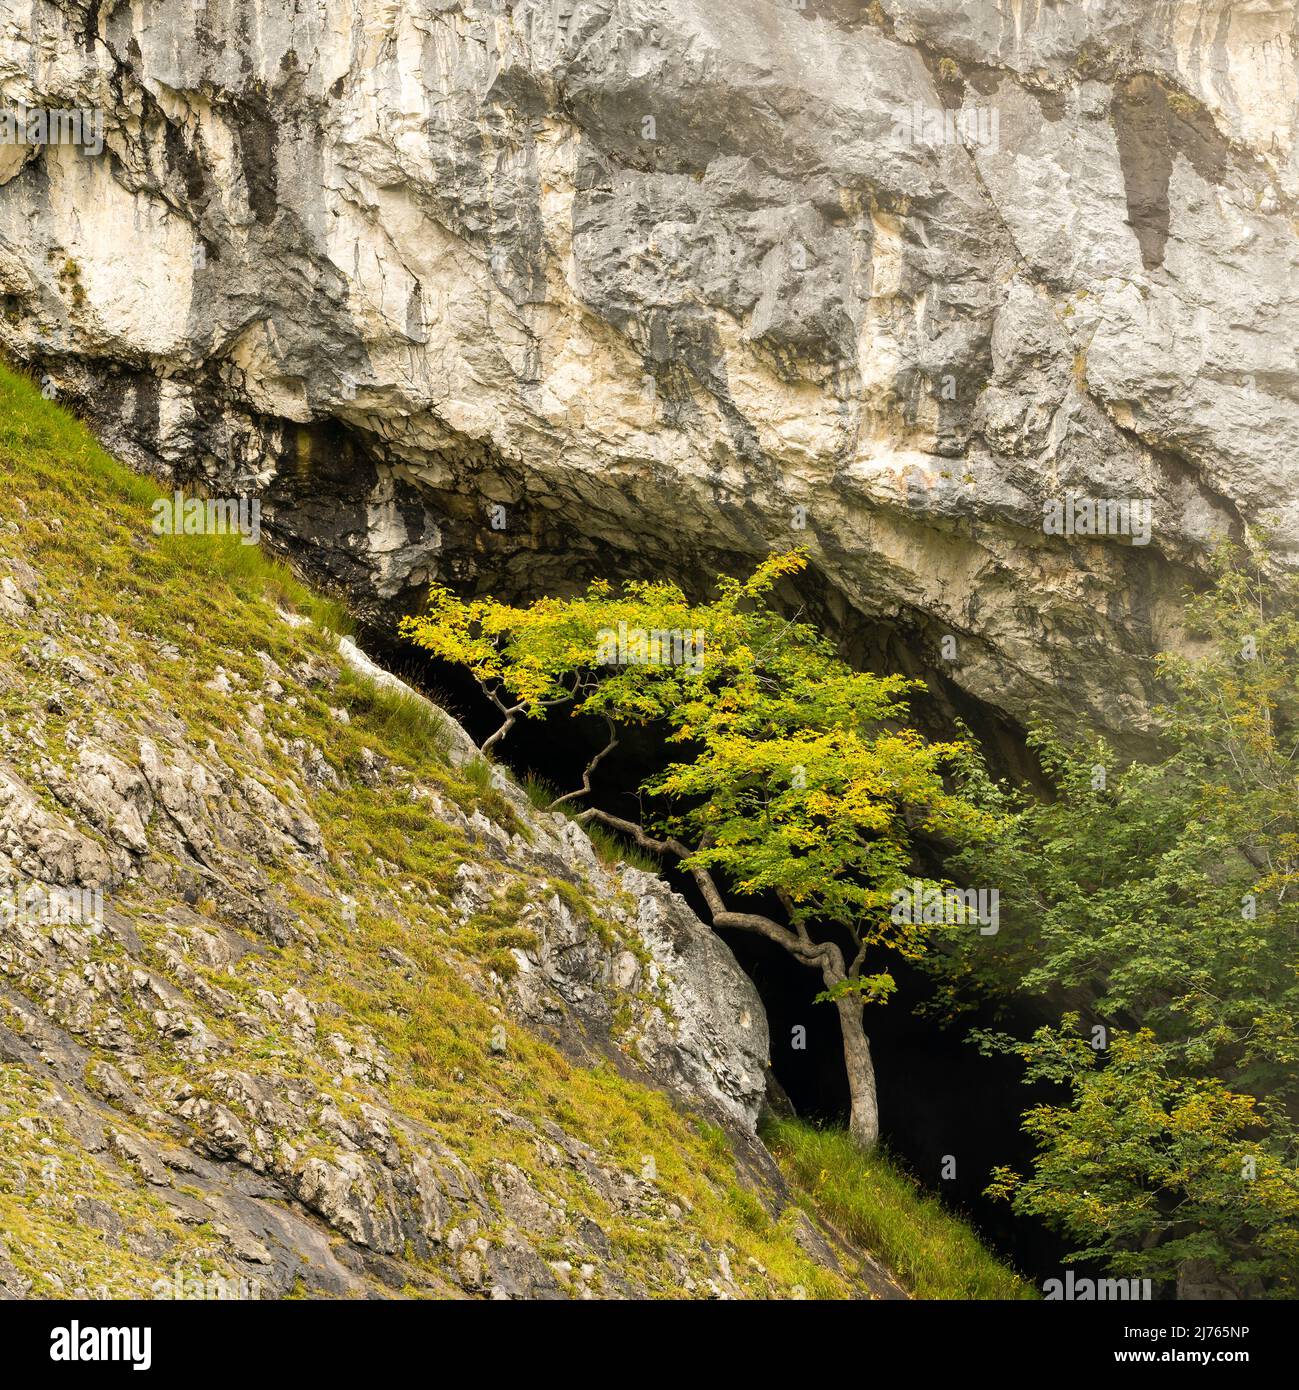 Ahorn vor einer Felsenhöhle im Karwendel auf einer schroffen Bergflanke oder Felswand, schon leicht gefärbtes Laub kündigt den Herbst an. Stockfoto